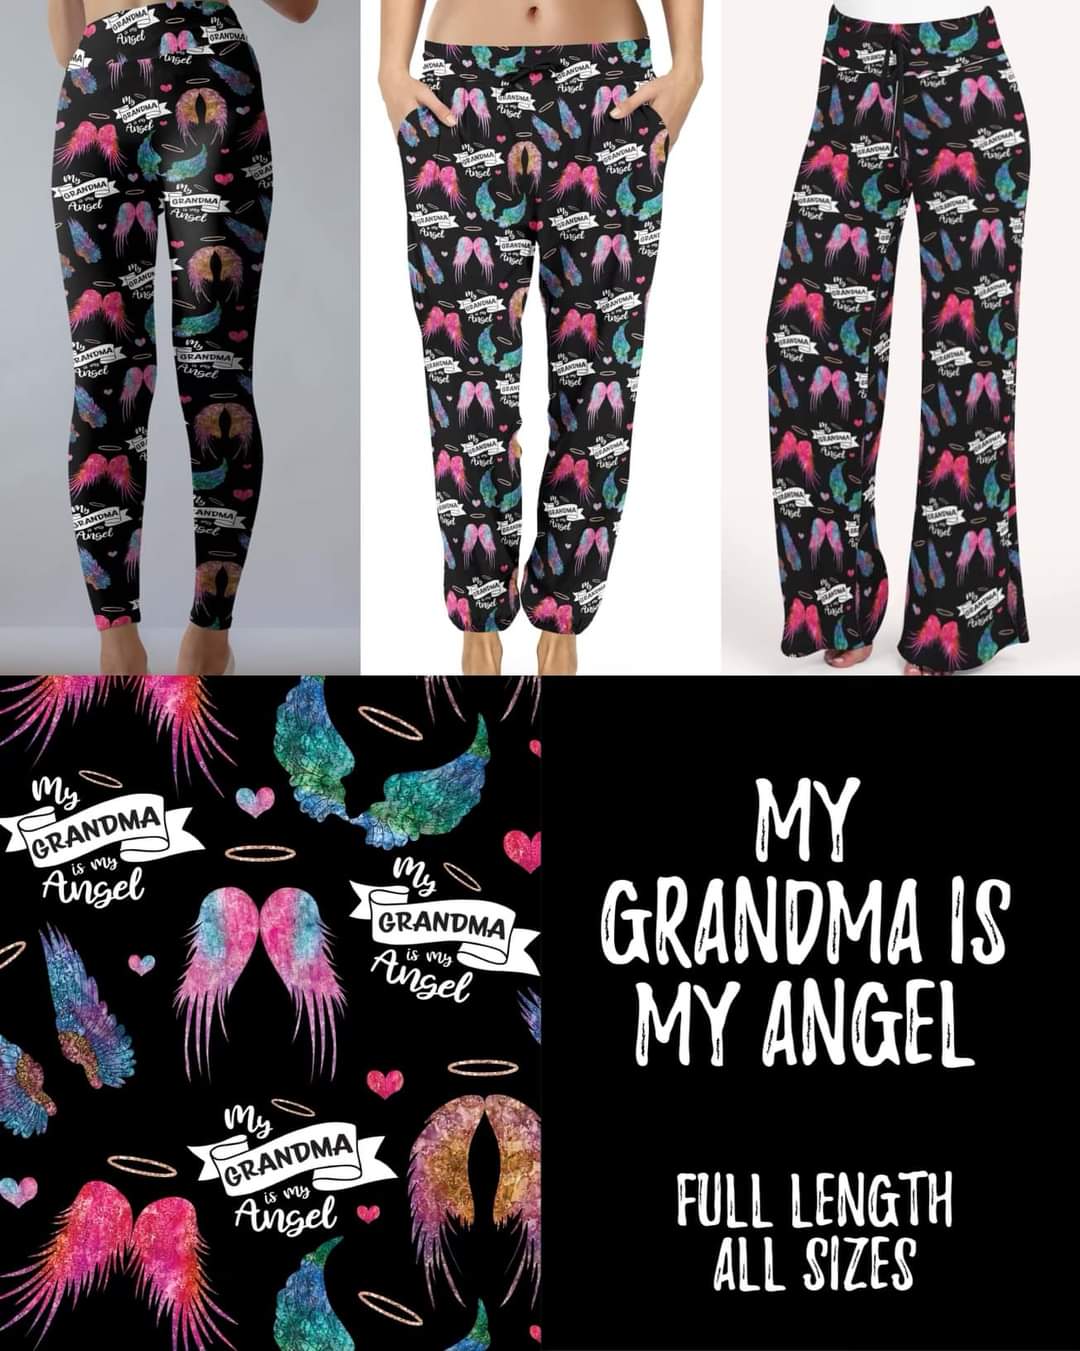 Grandma is my angel